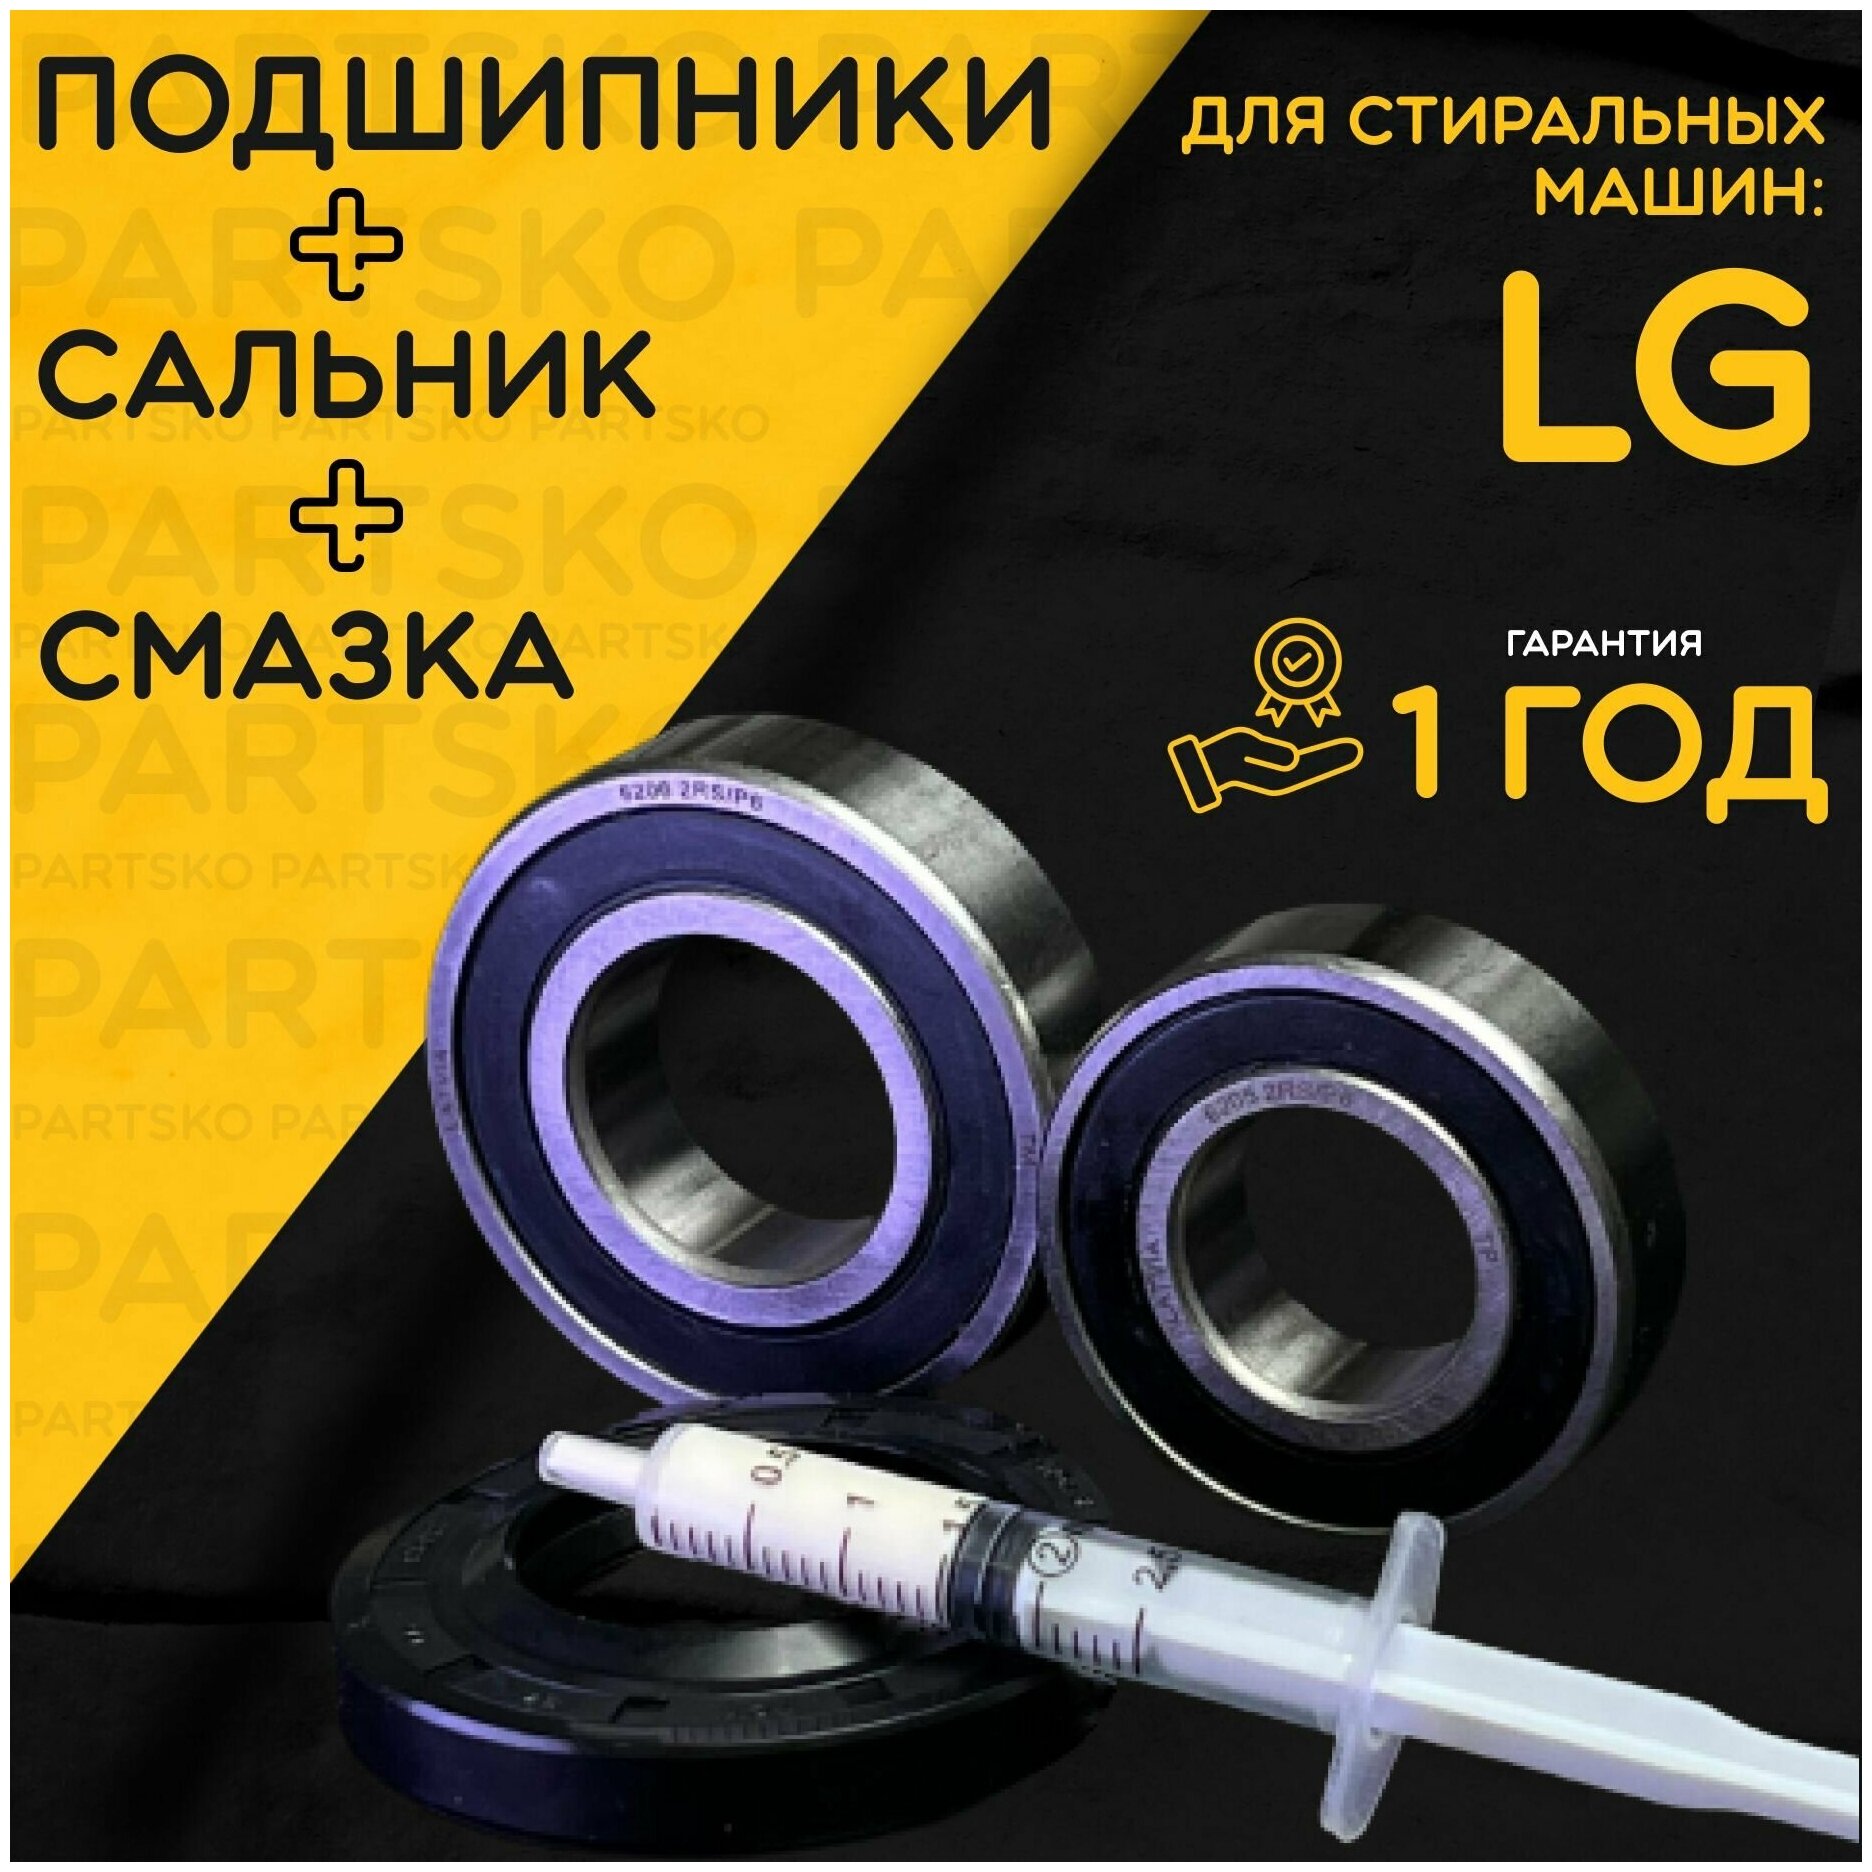 Подшипник для стиральной машины LG / Запчасть LG / Ремкомплект Лджи. Сальник/Прокладка: 37*66*9,5/12 мм. Подшипники: 6205/6206. Смазка: Hydra 1.5мл. Производство Латвия